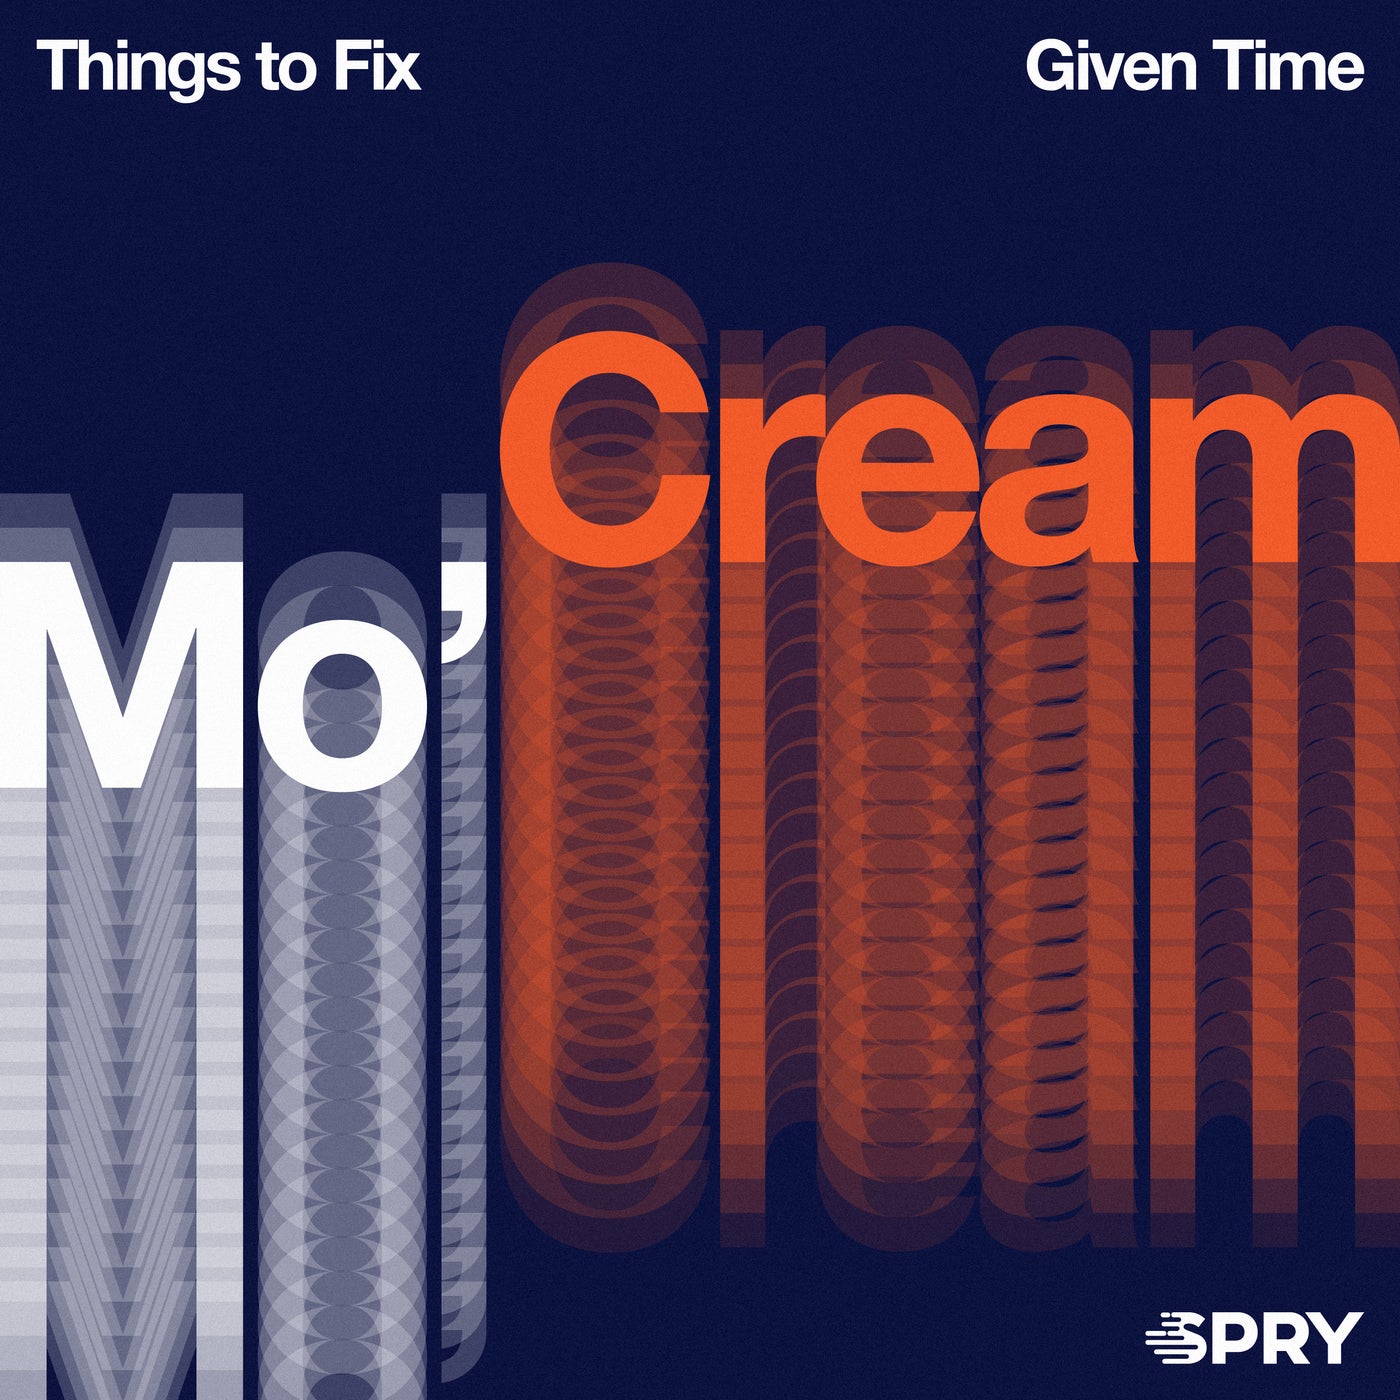 Mo'Cream. Creamer things. Me time. Fix main